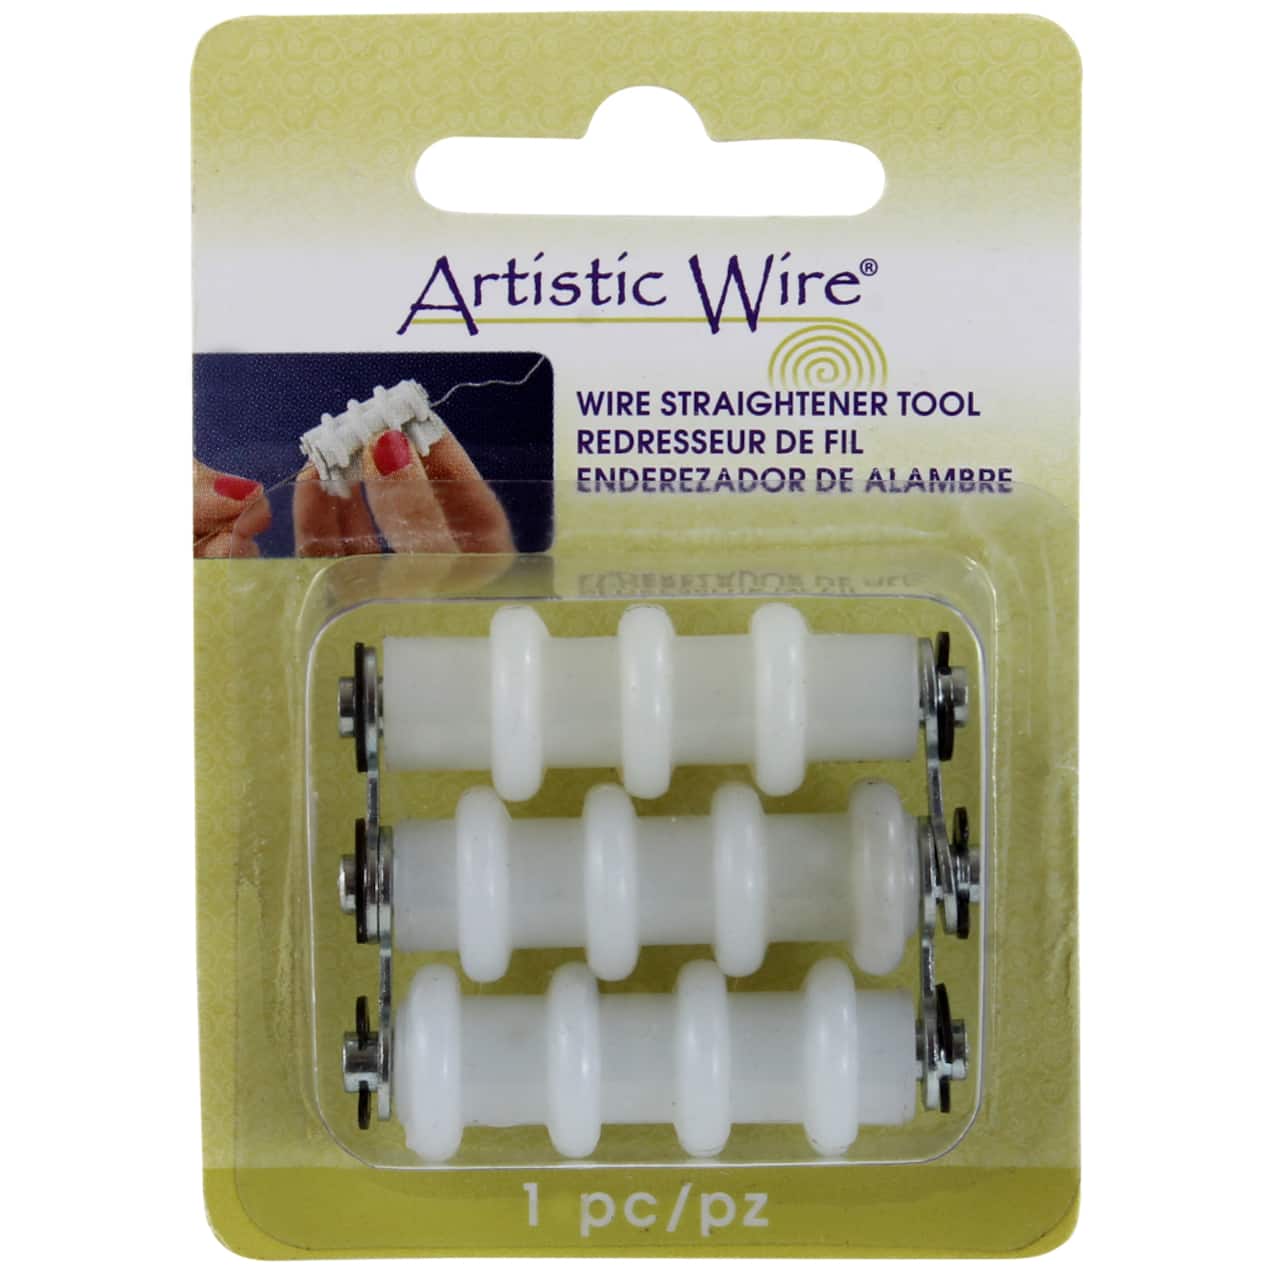 Artistic Wire® Wire Straightener